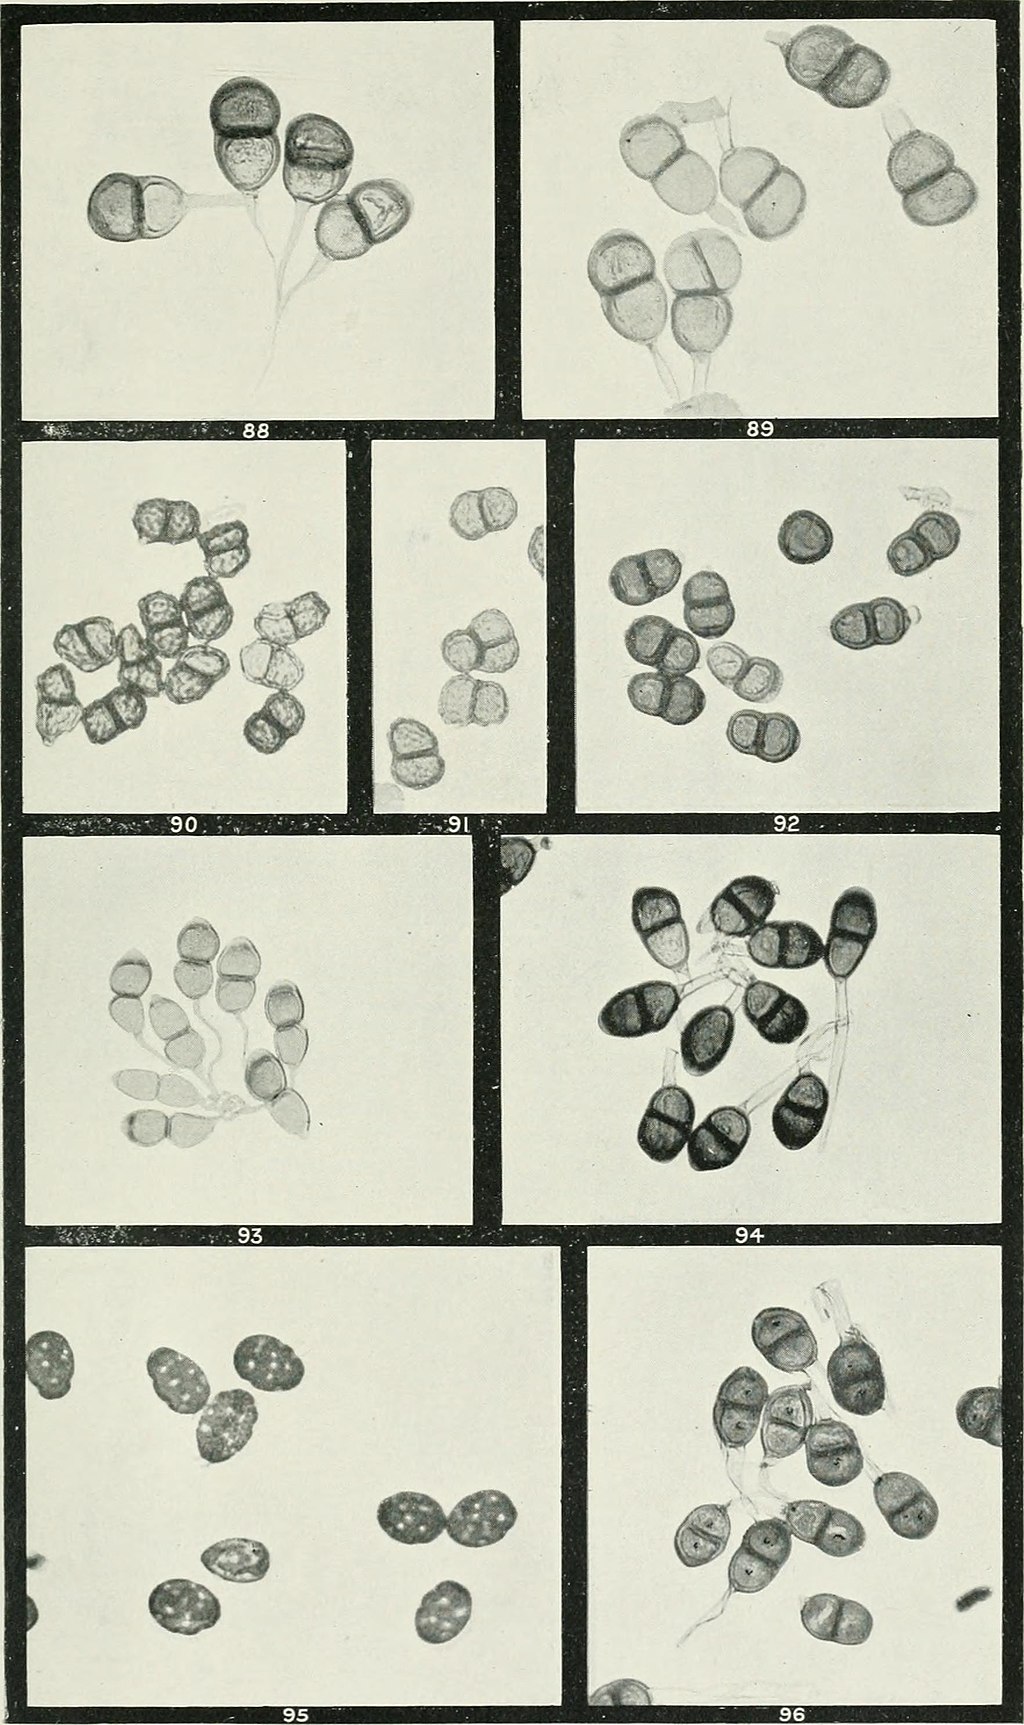 Varias micrografías de esporas de aspecto similar: Cada una es una espora septada grande con dos compartimentos en la parte superior de un tallo transparente.